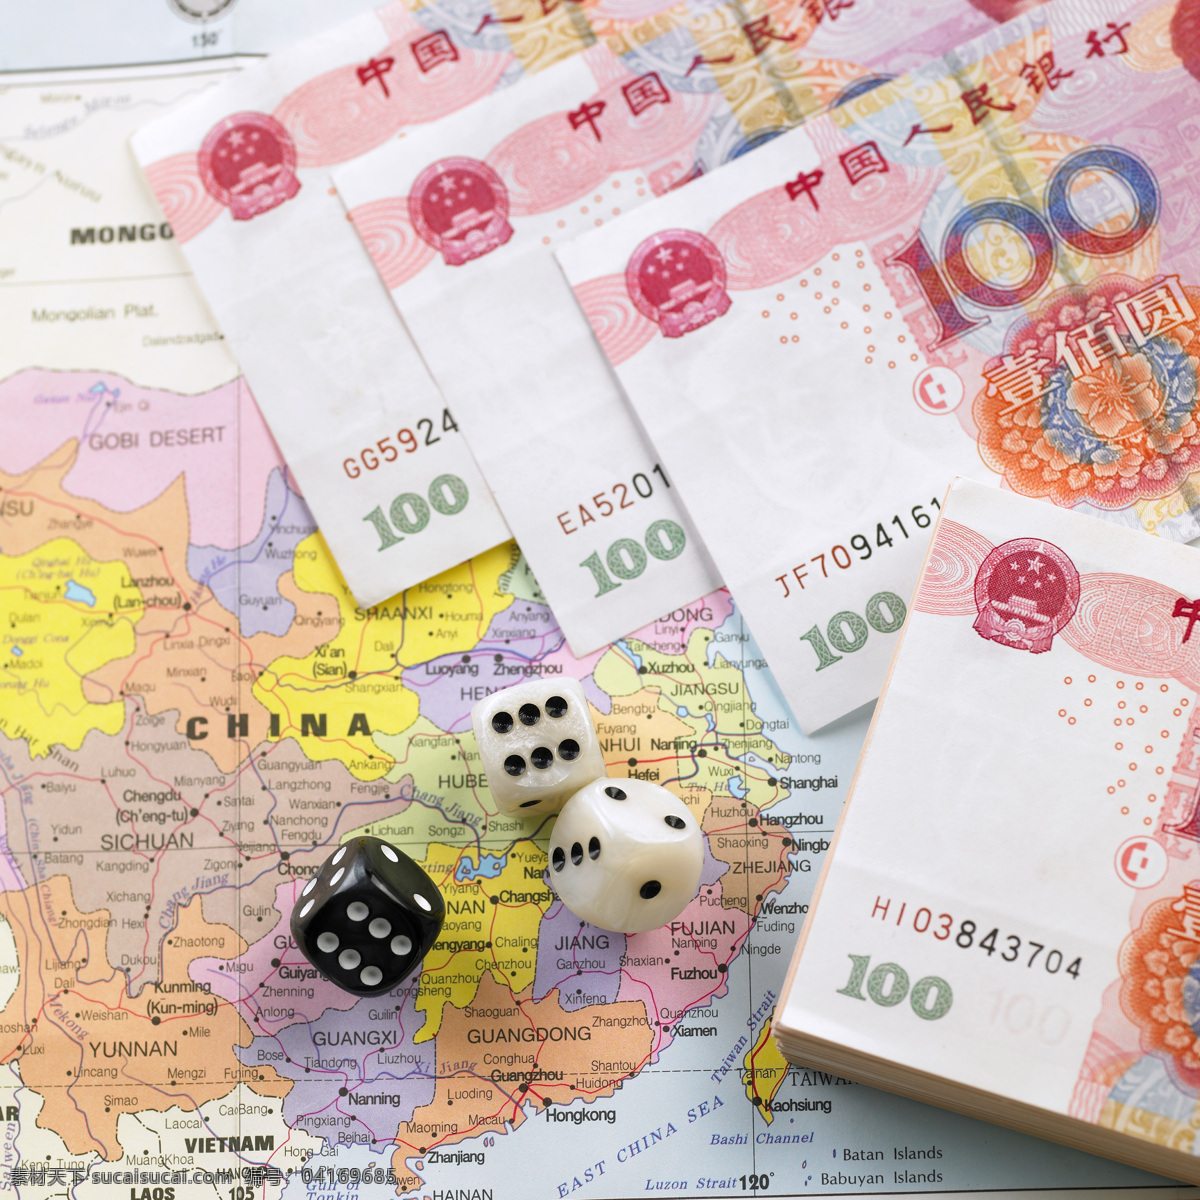 人民币 中国货币 色子 骰子 赌博 100元纸币 金融对话 货币兑换 纸钞 金钱 现金 金融货币 世界经济 商务金融